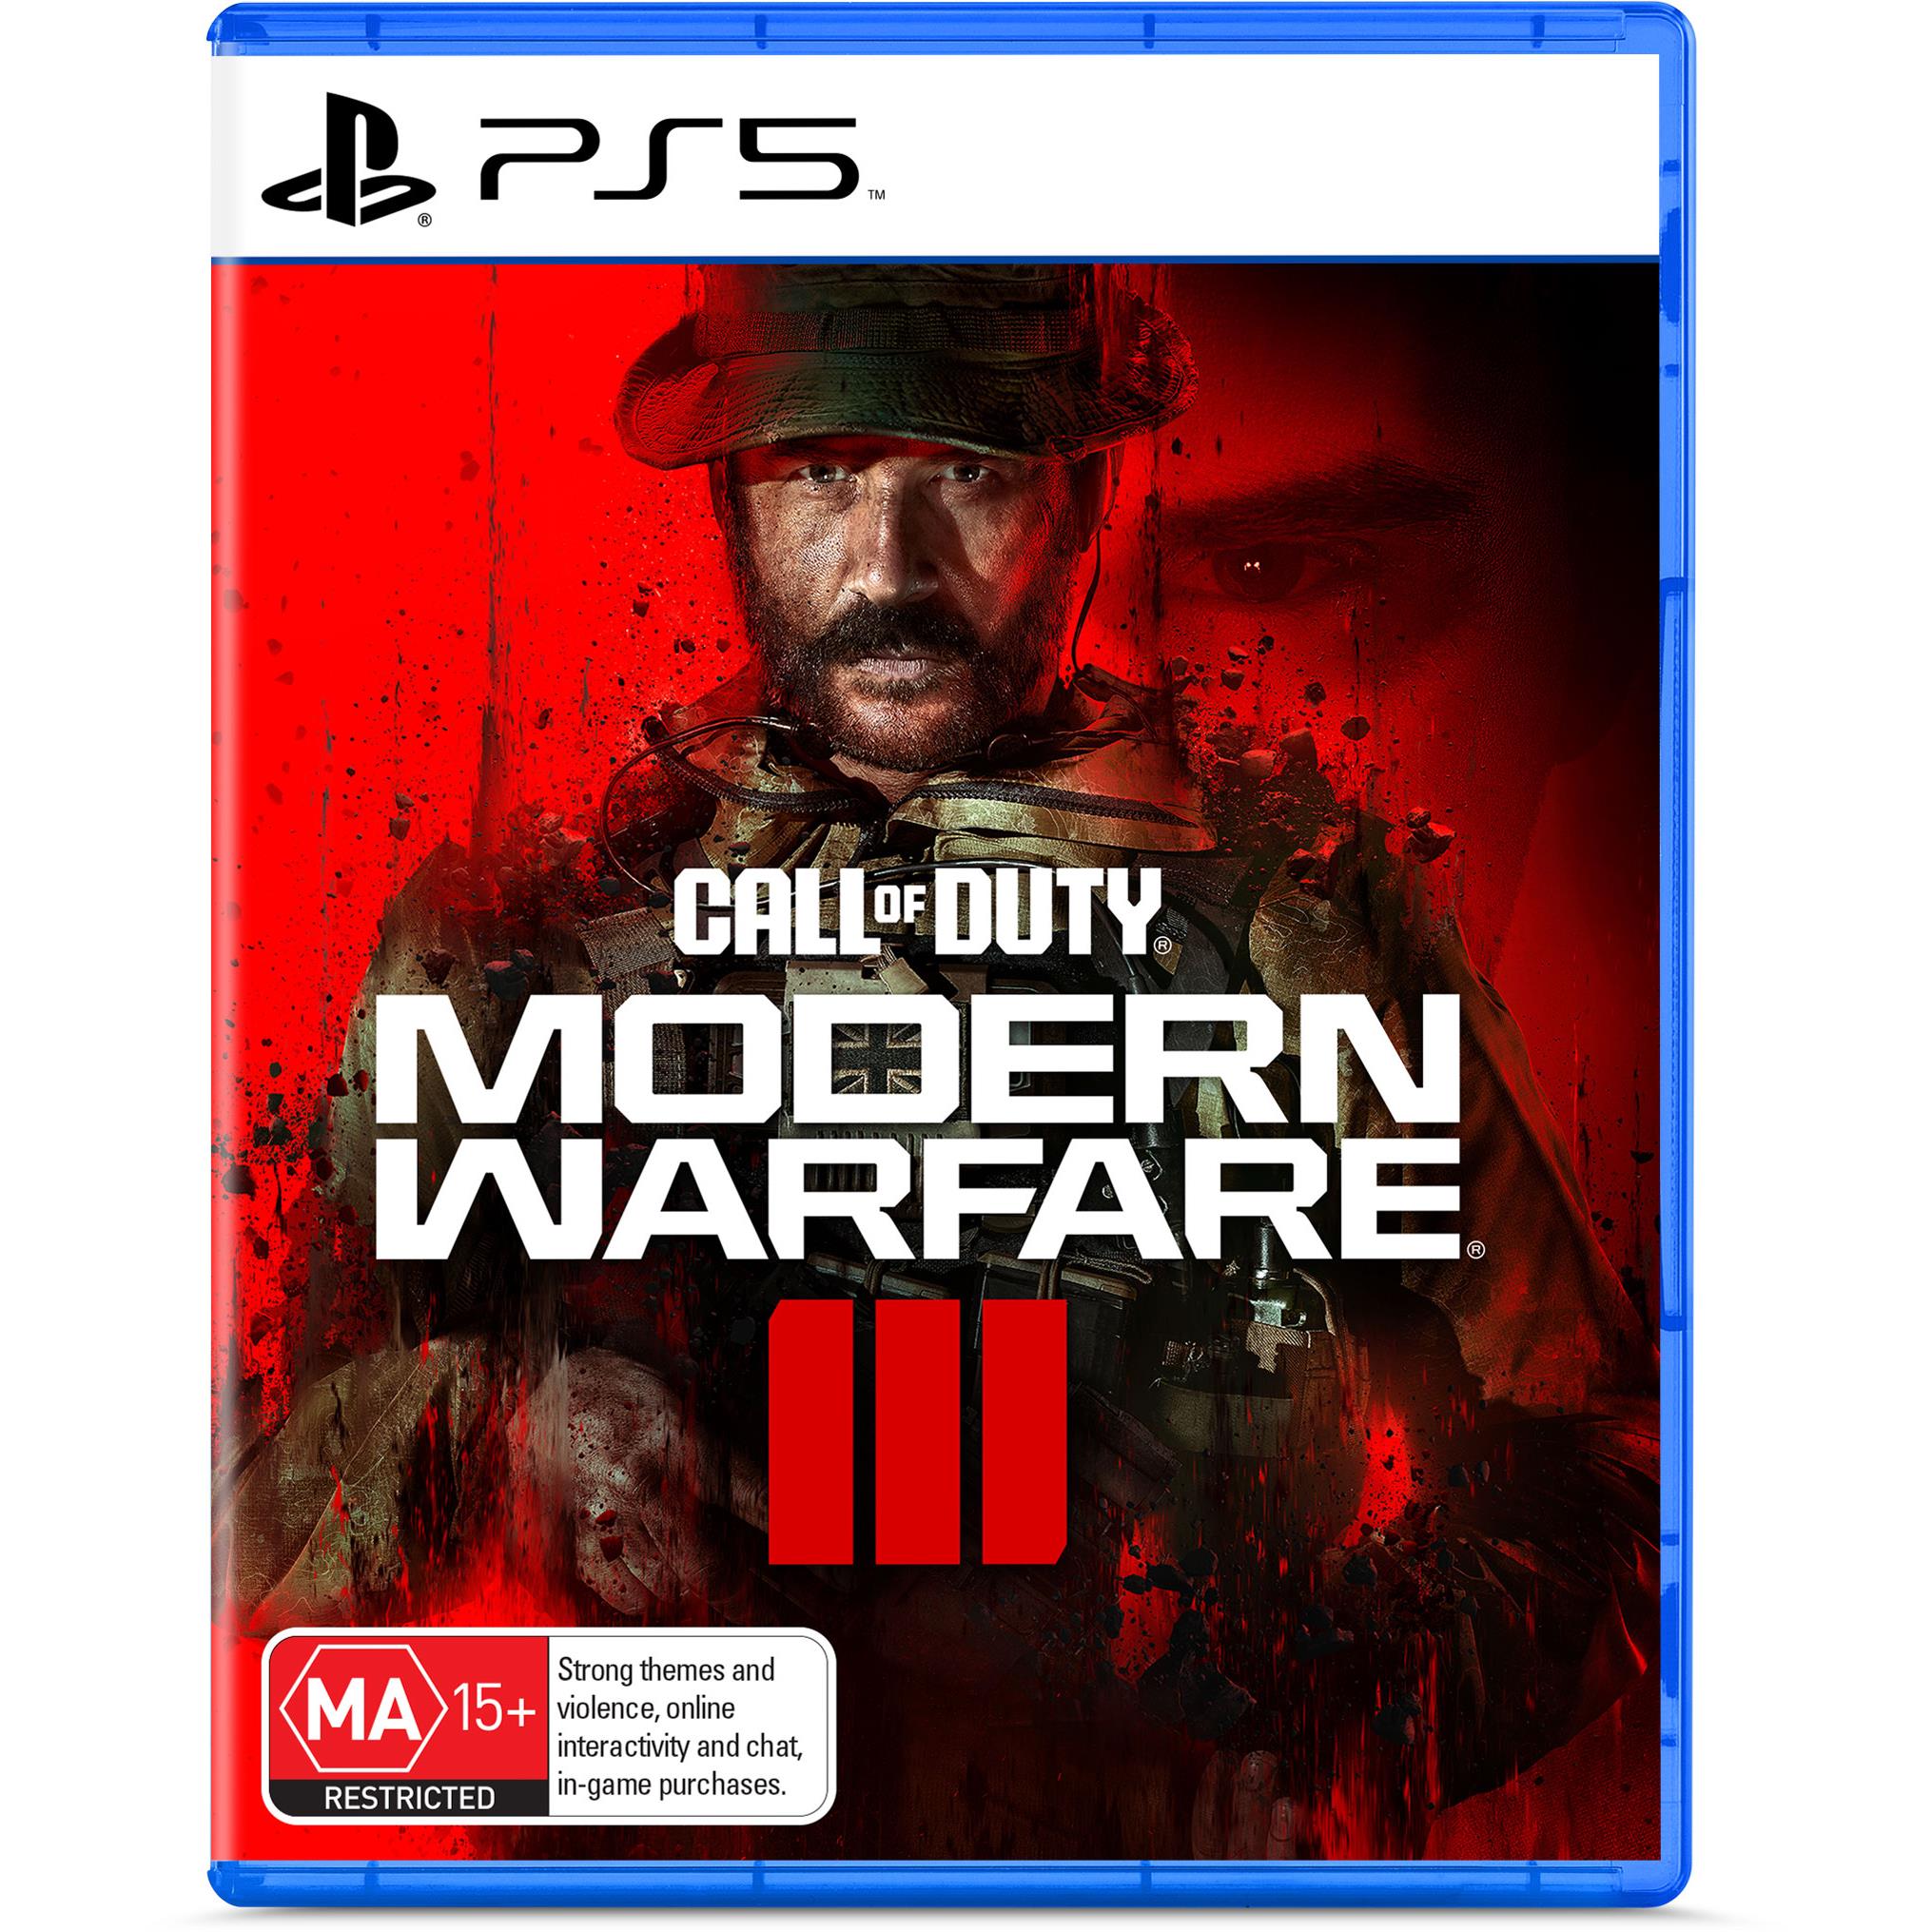 Sony PlayStation 5 Call of Duty: Modern Warfare 3 Bundle now